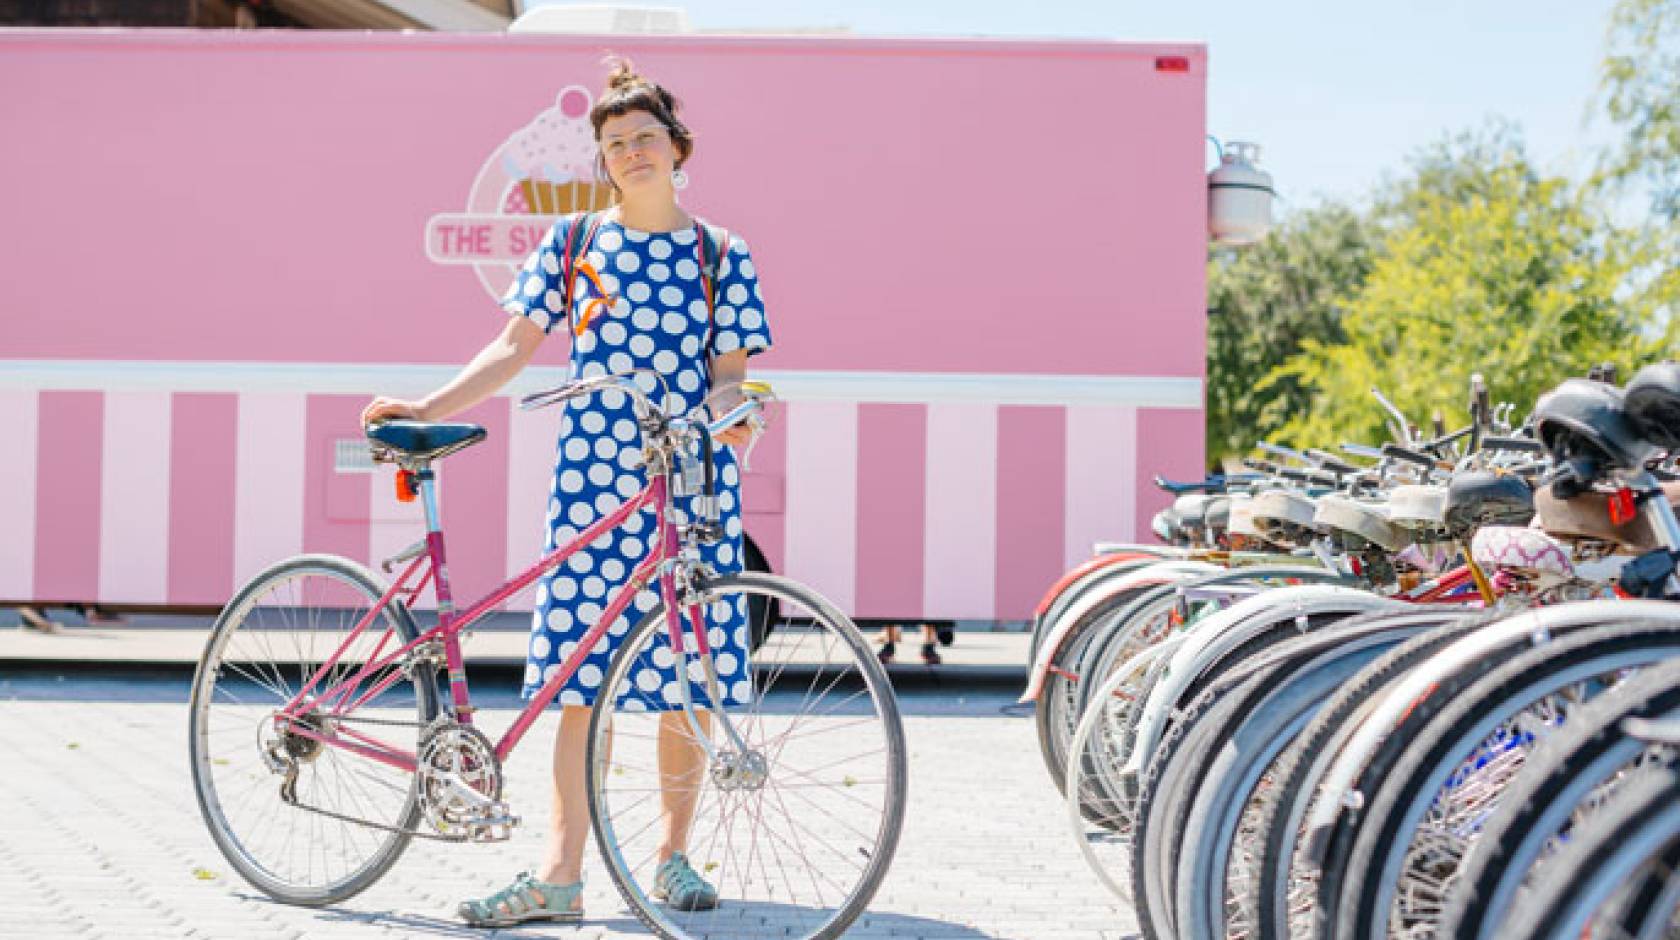 Woman in polka dot dress standing with bike at bike rack